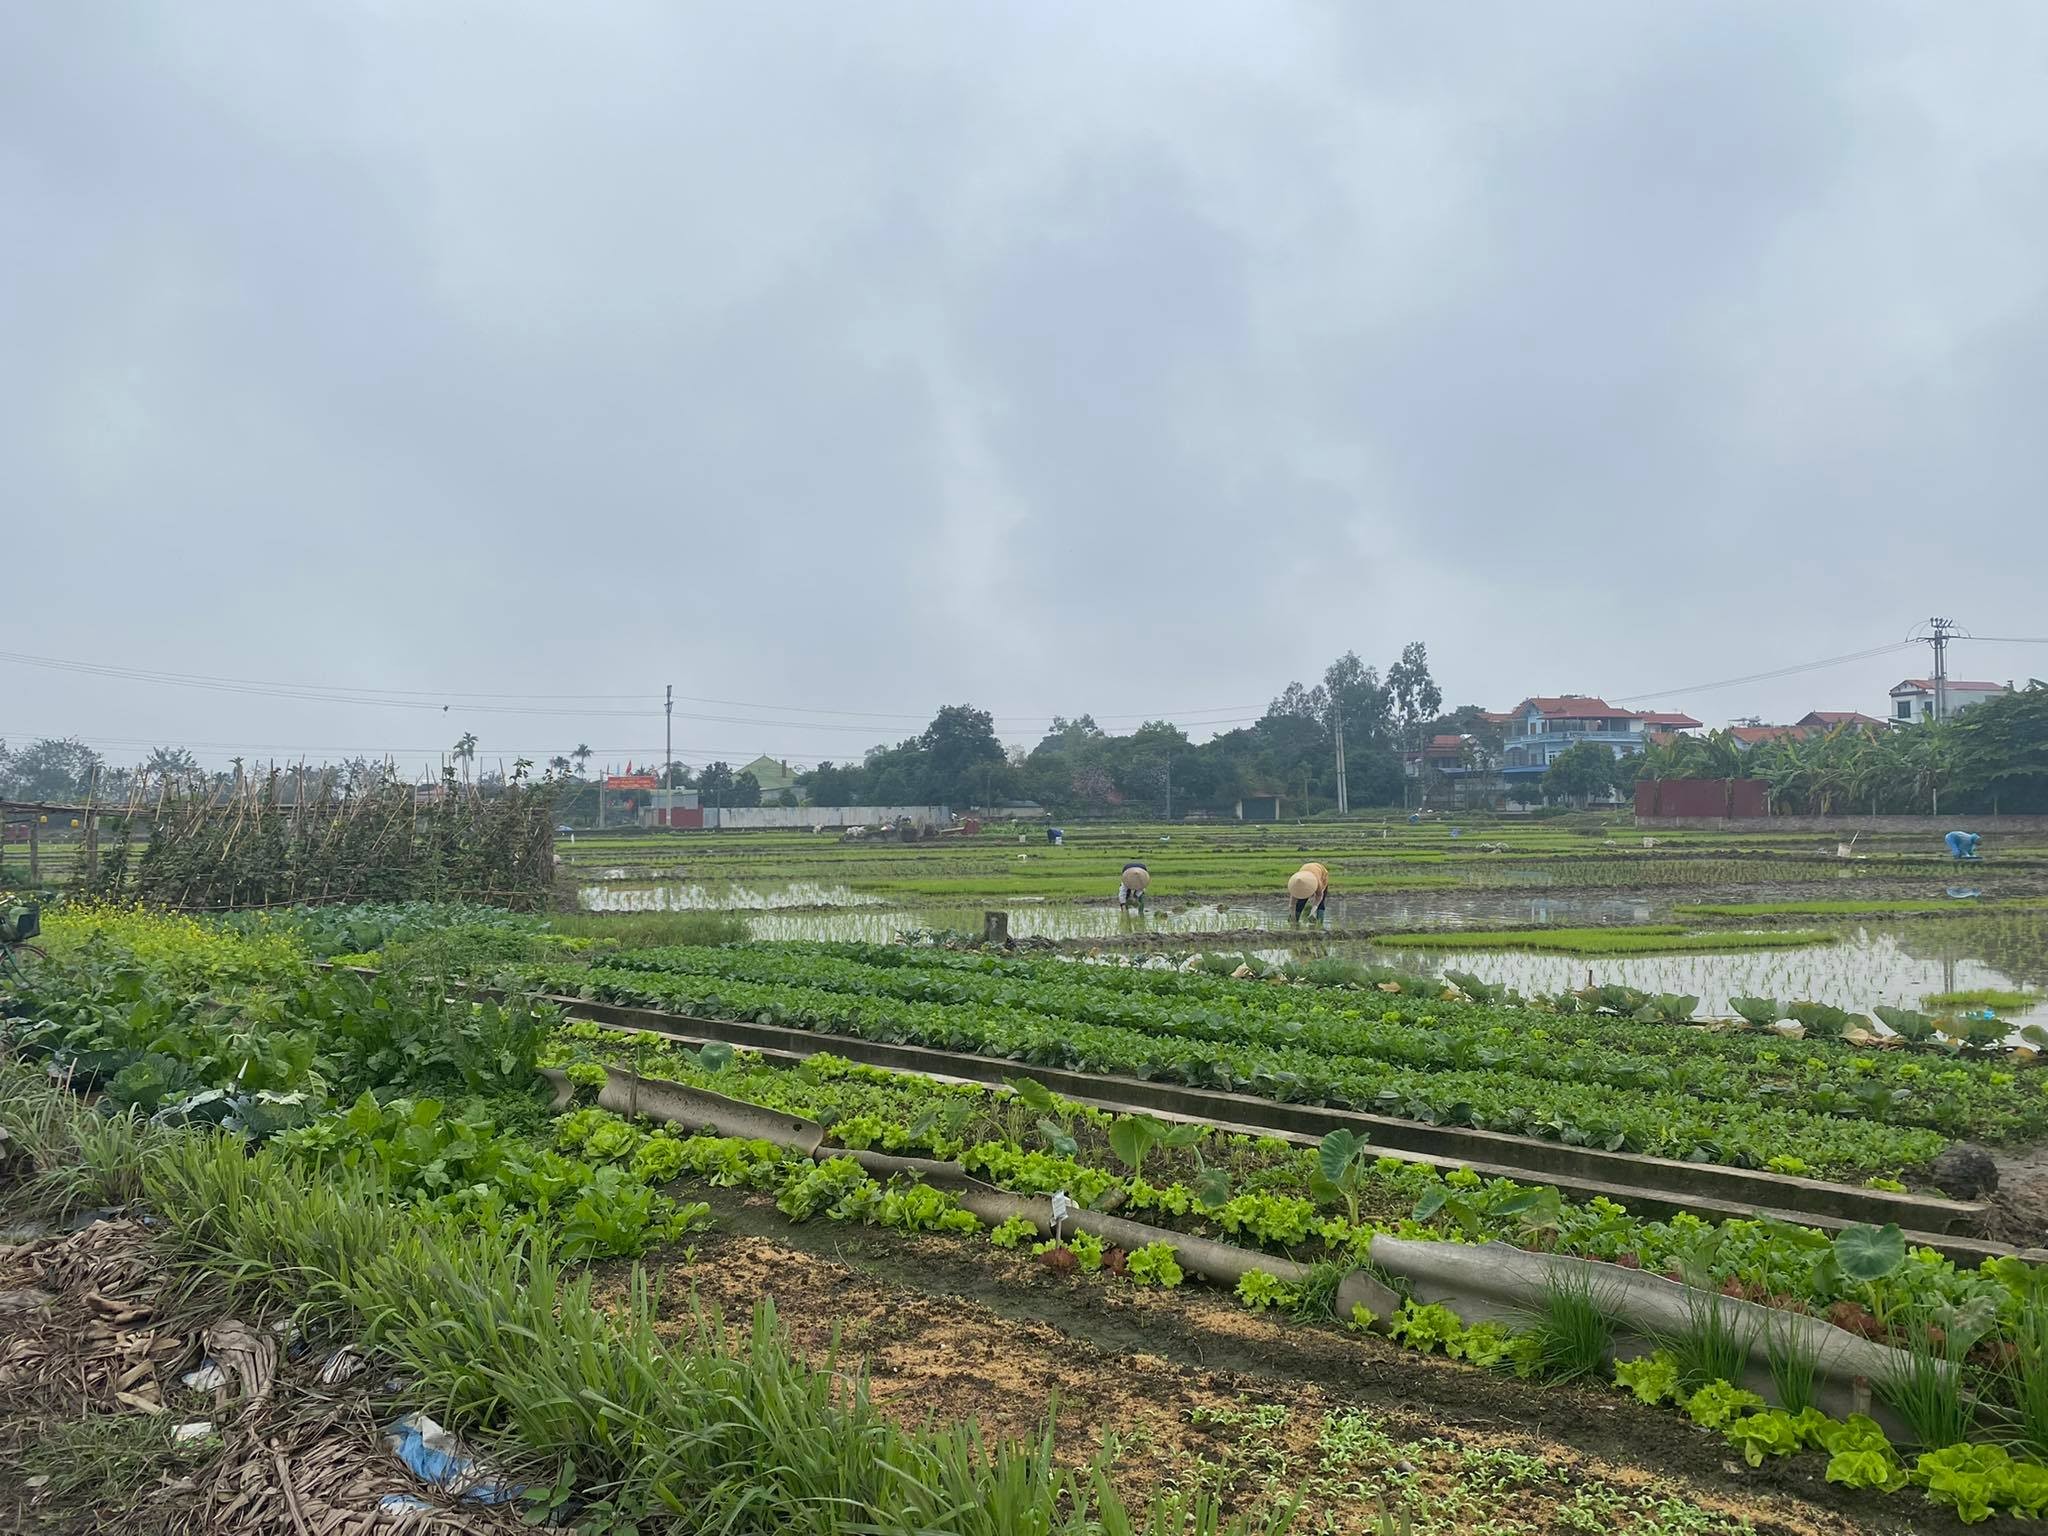 
Người dân xã Thanh Xuân vẫn chủ yếu sản xuất nông nghiêp, nơi đây chưa có dấu hiệu thay đổi khi có quy hoạch đường vành đai 4
